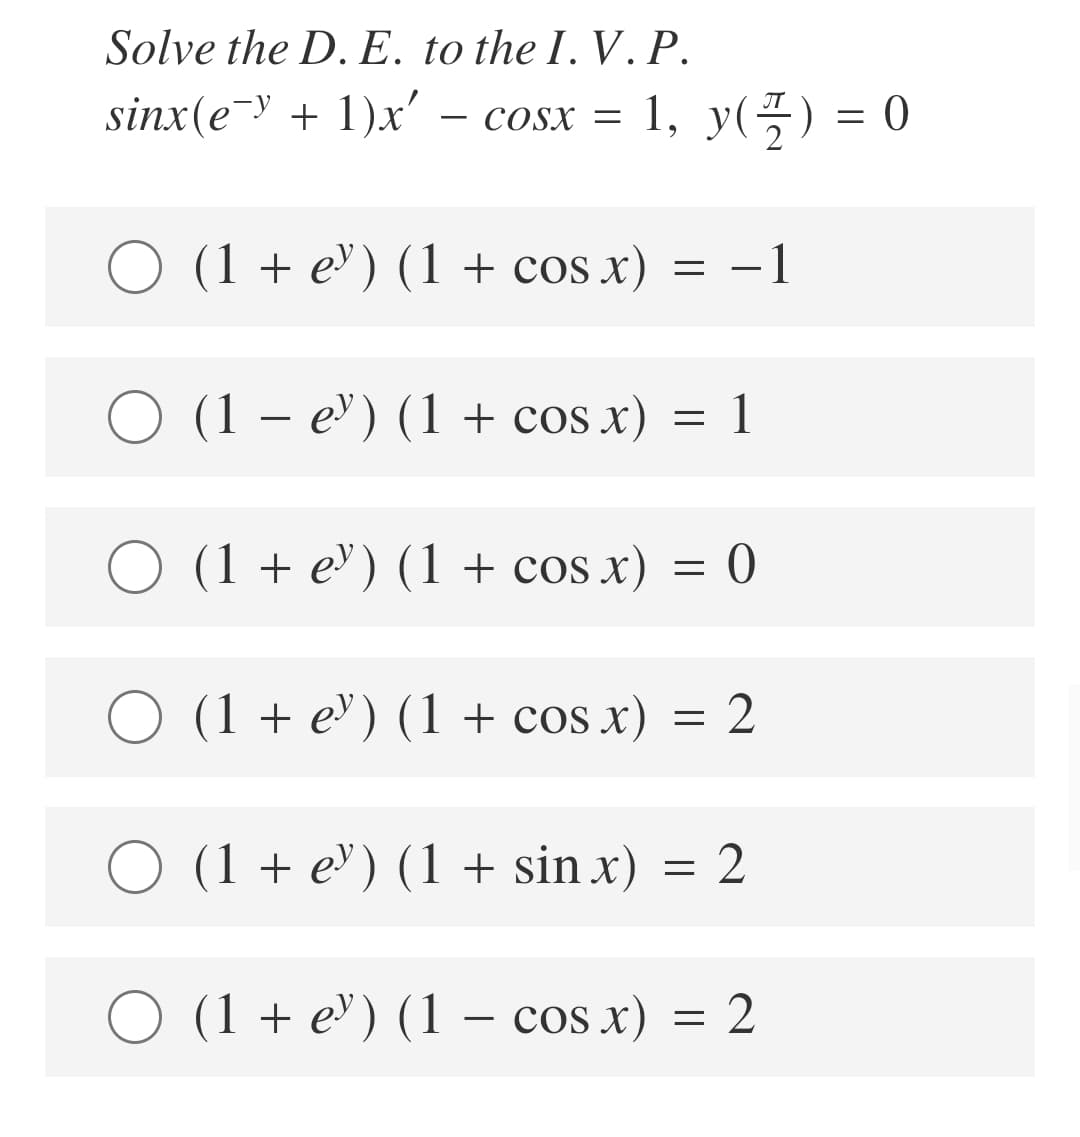 Solve the D. E. to the I. V. P.
sinx(e-y + 1)x' – cosx = 1, y(G) = 0
COSX =
O (1 + e') (1 + cos x)
-1
O (1 – e) (1 + cos x) = 1
O (1 + e') (1 + cos x) = 0
(1 + е") (1 + cos x) —D 2
O (1 + e") (1 + sin x)
= 2
(1 + e) (1 – cos x) = 2
